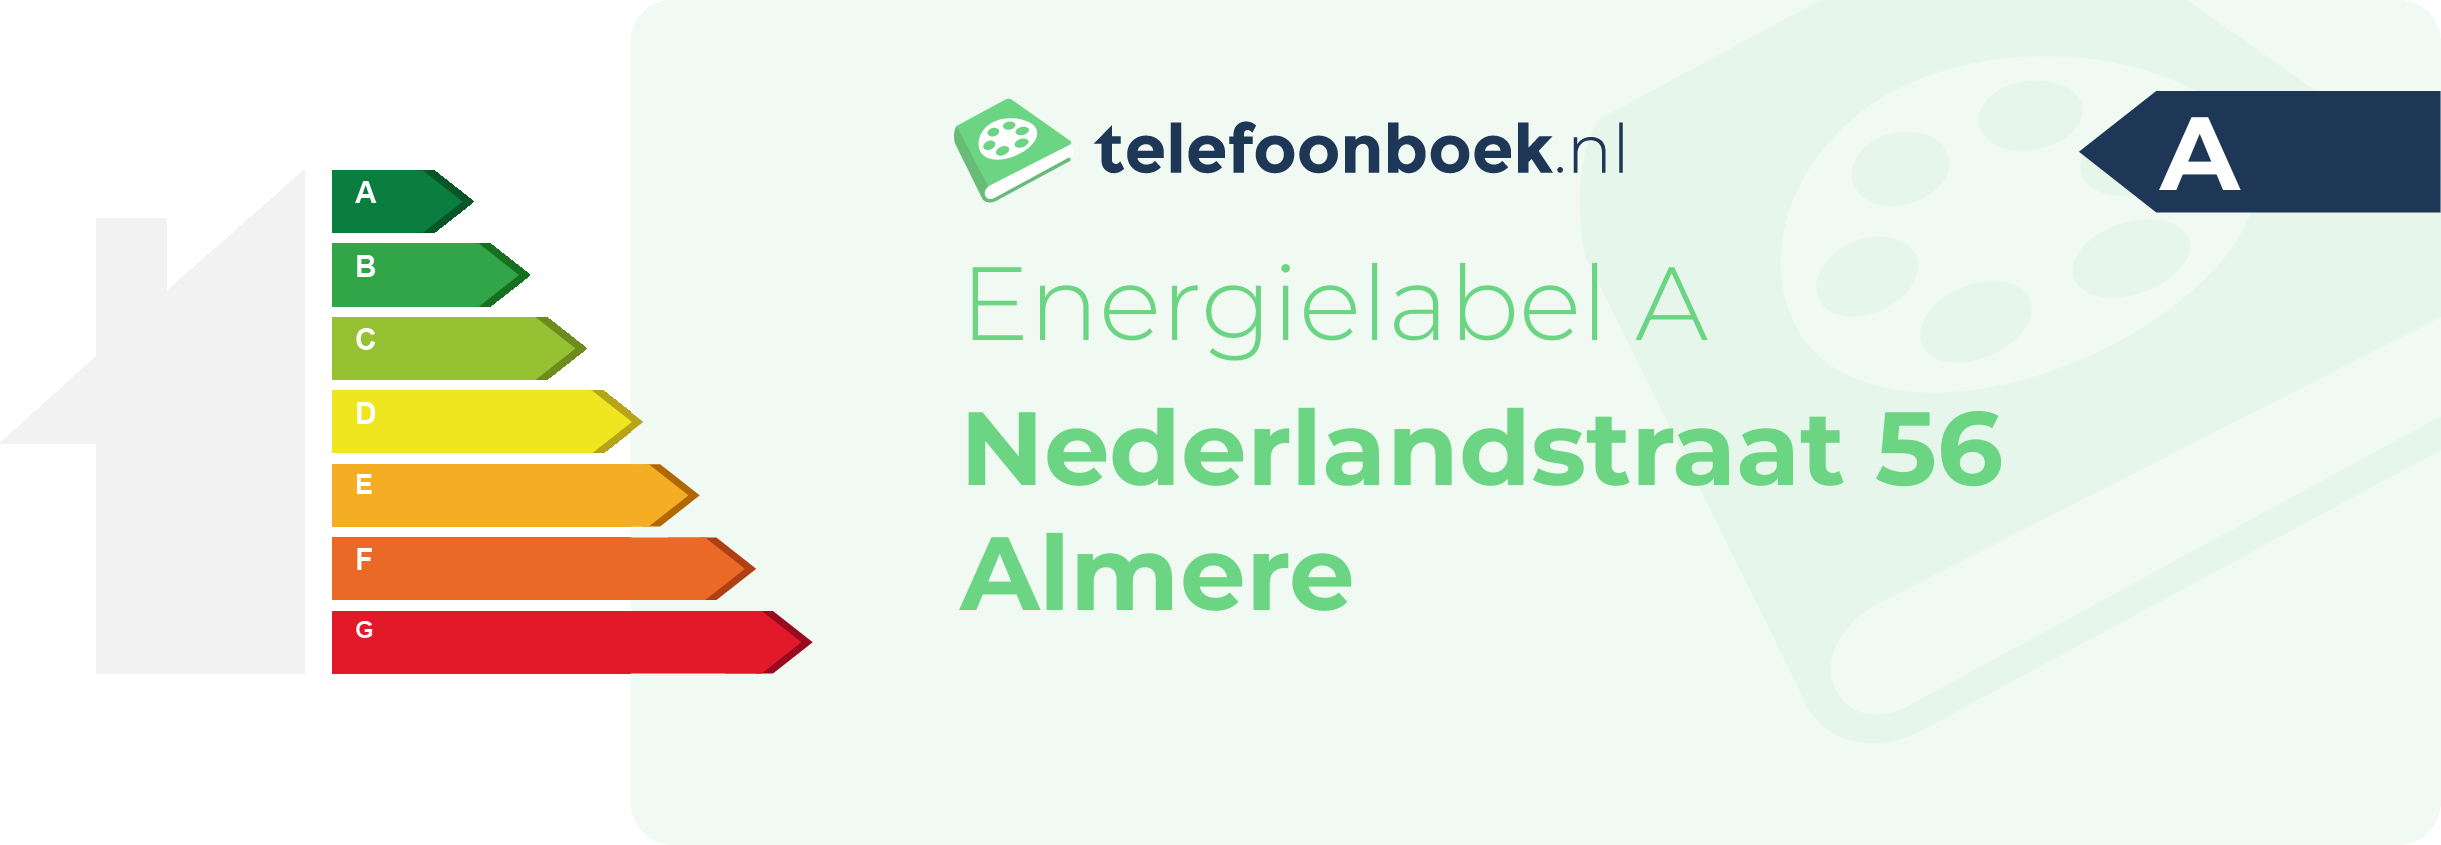 Energielabel Nederlandstraat 56 Almere